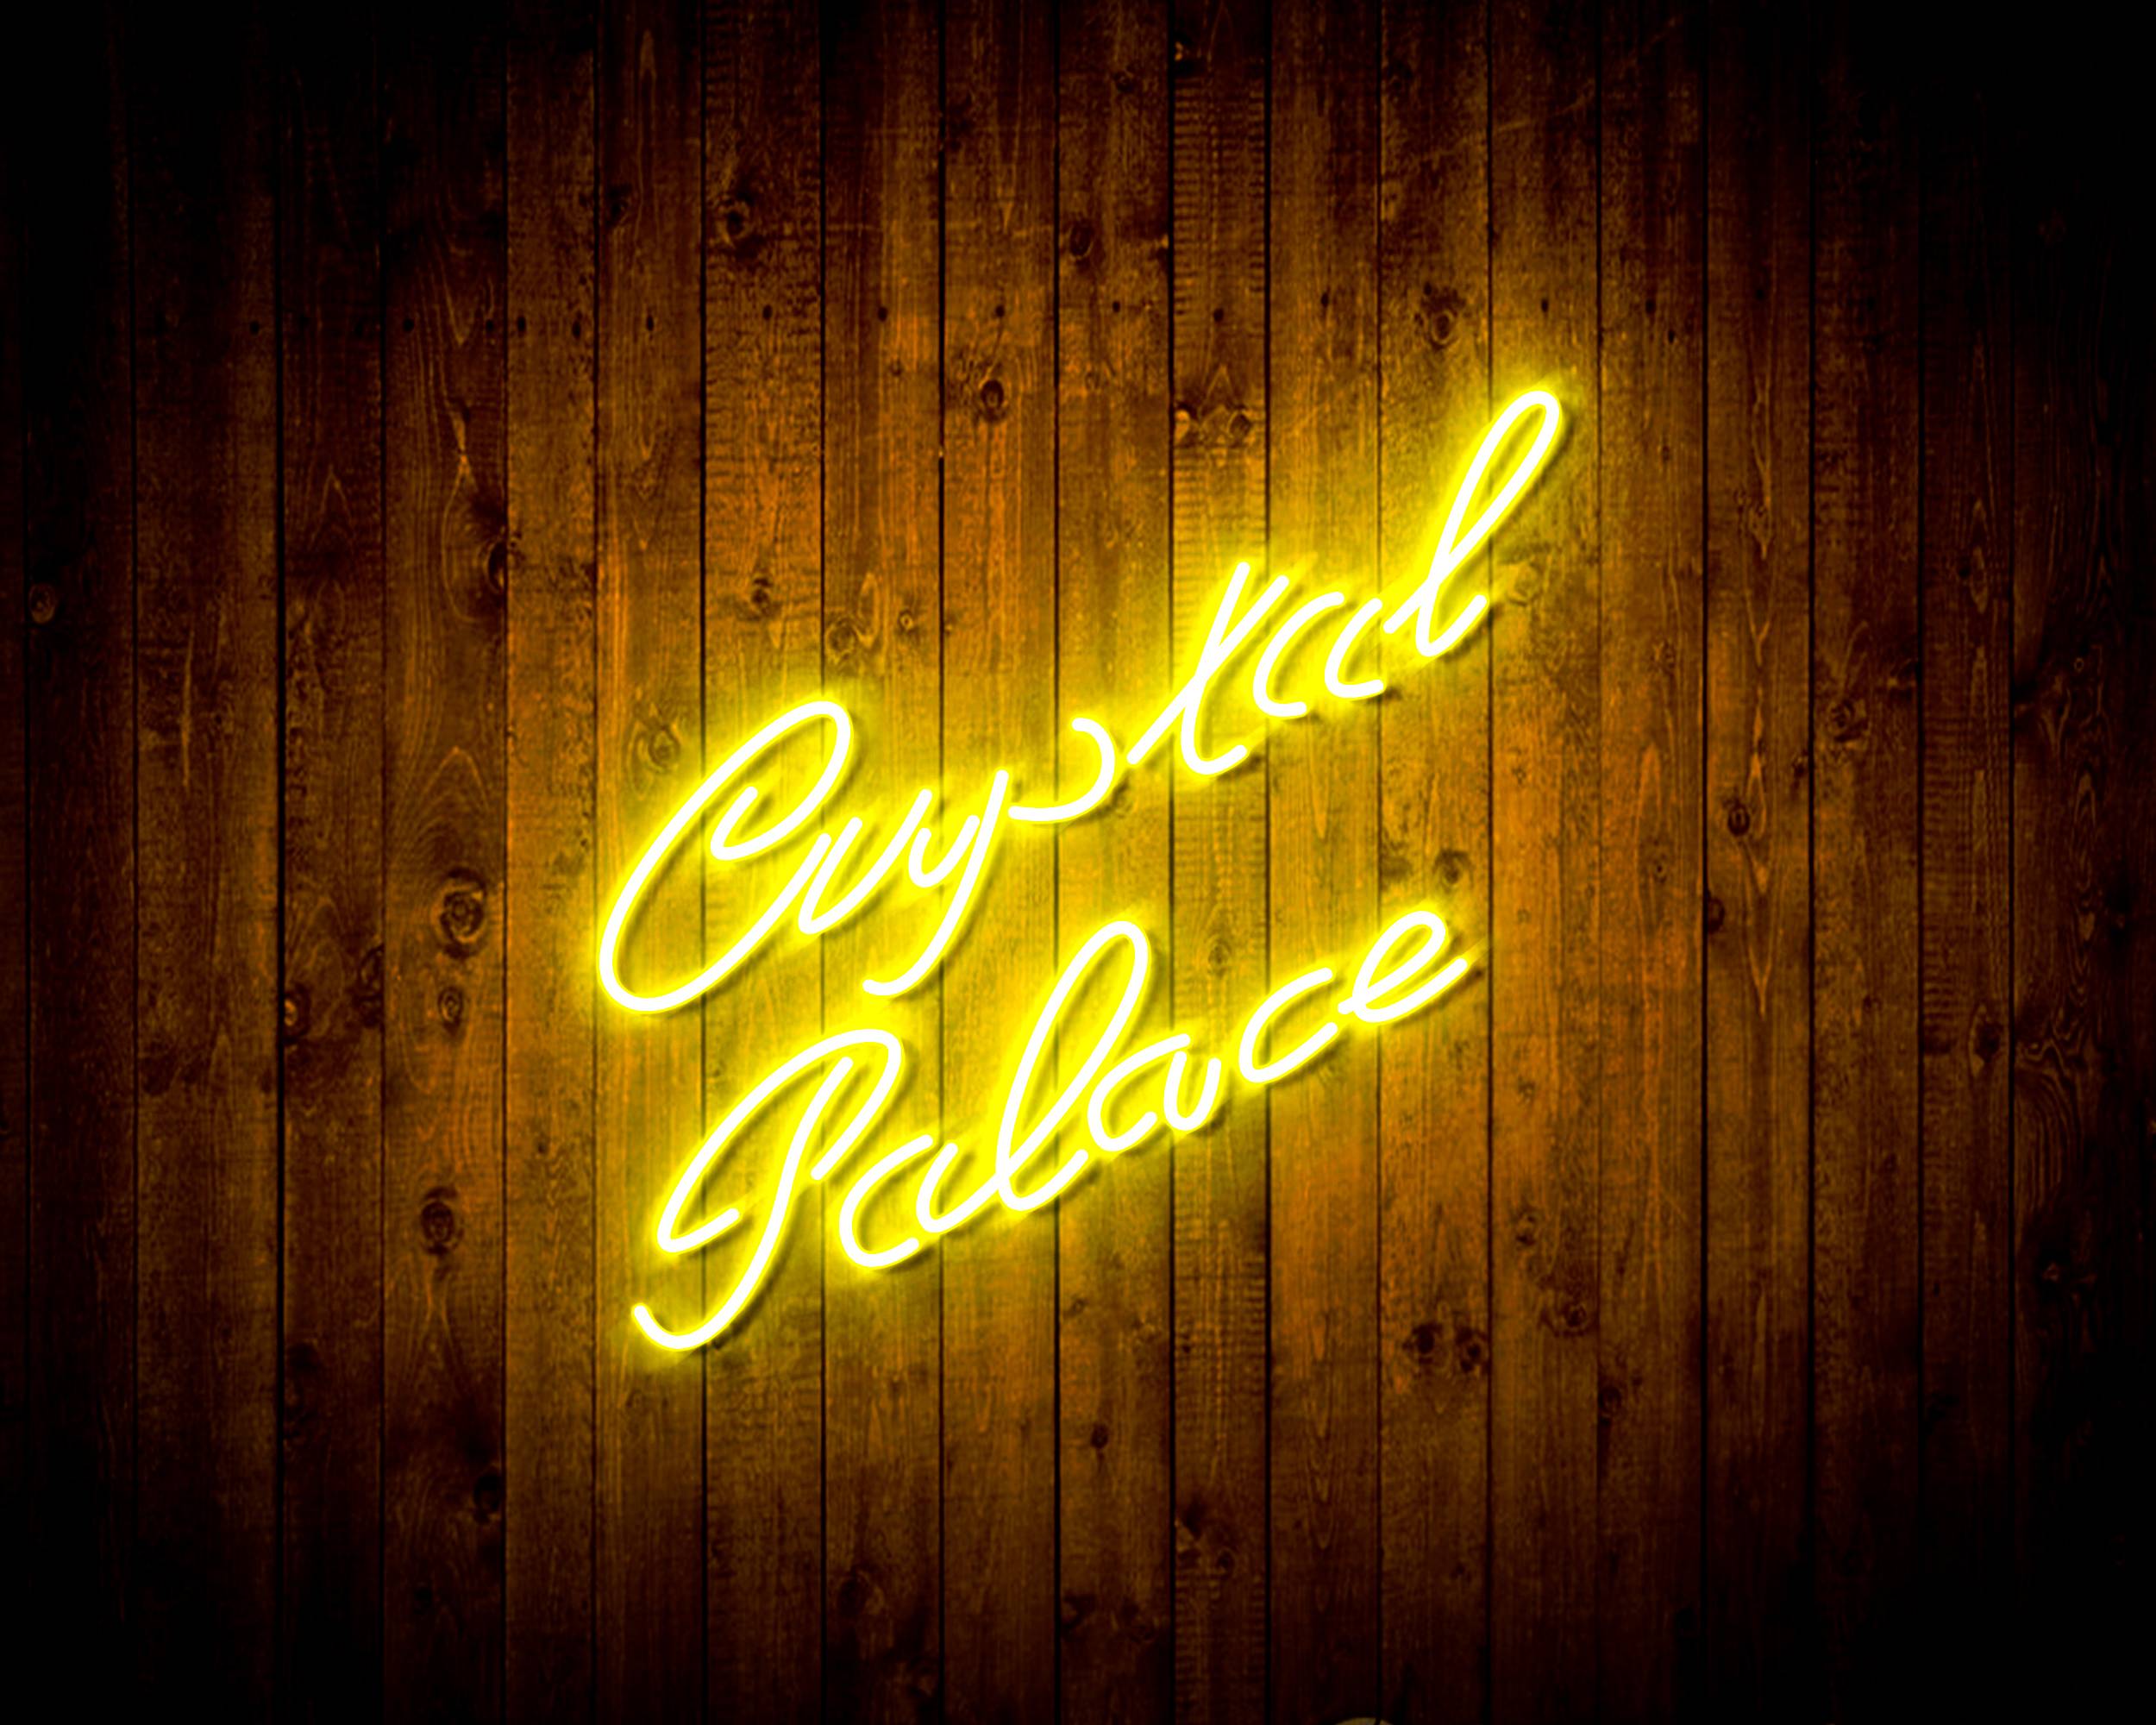 Premier League Crystal Palace Football Club Handmade LED Neon Light Sign